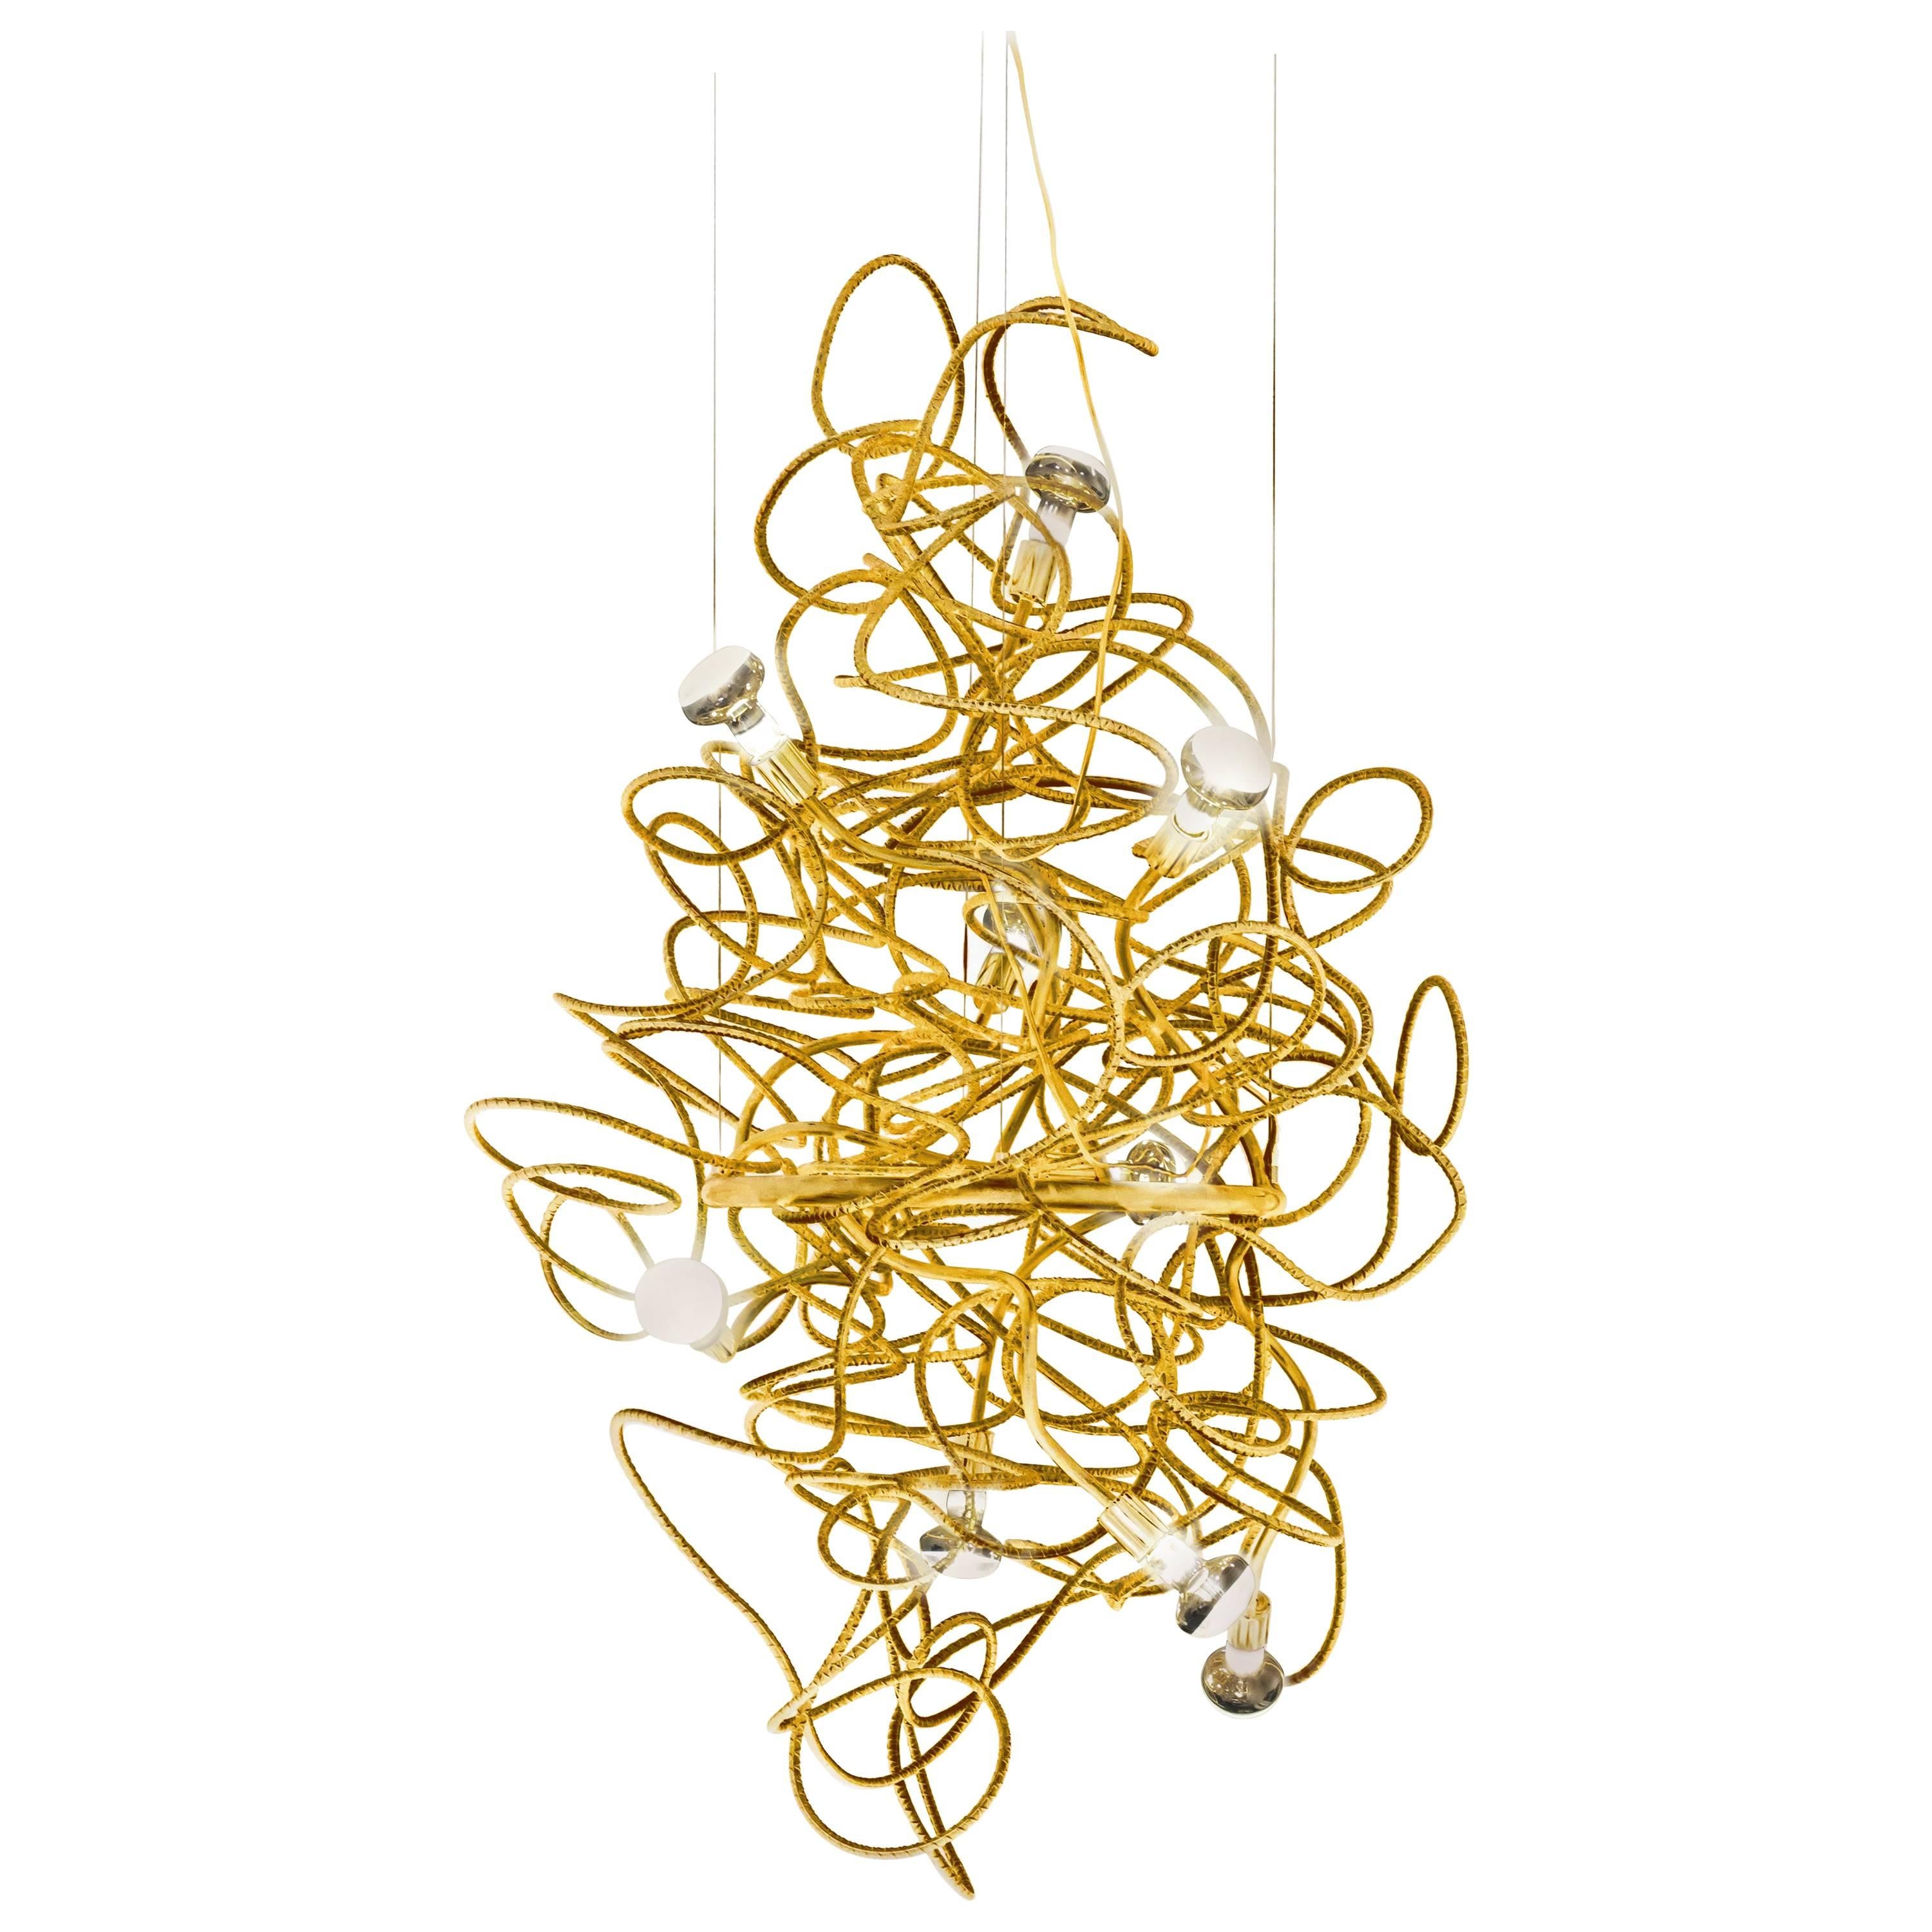 DAX VERTICAL CHANDELIER - Modern Gold Leafed Sculptural Rebar Lighting Design